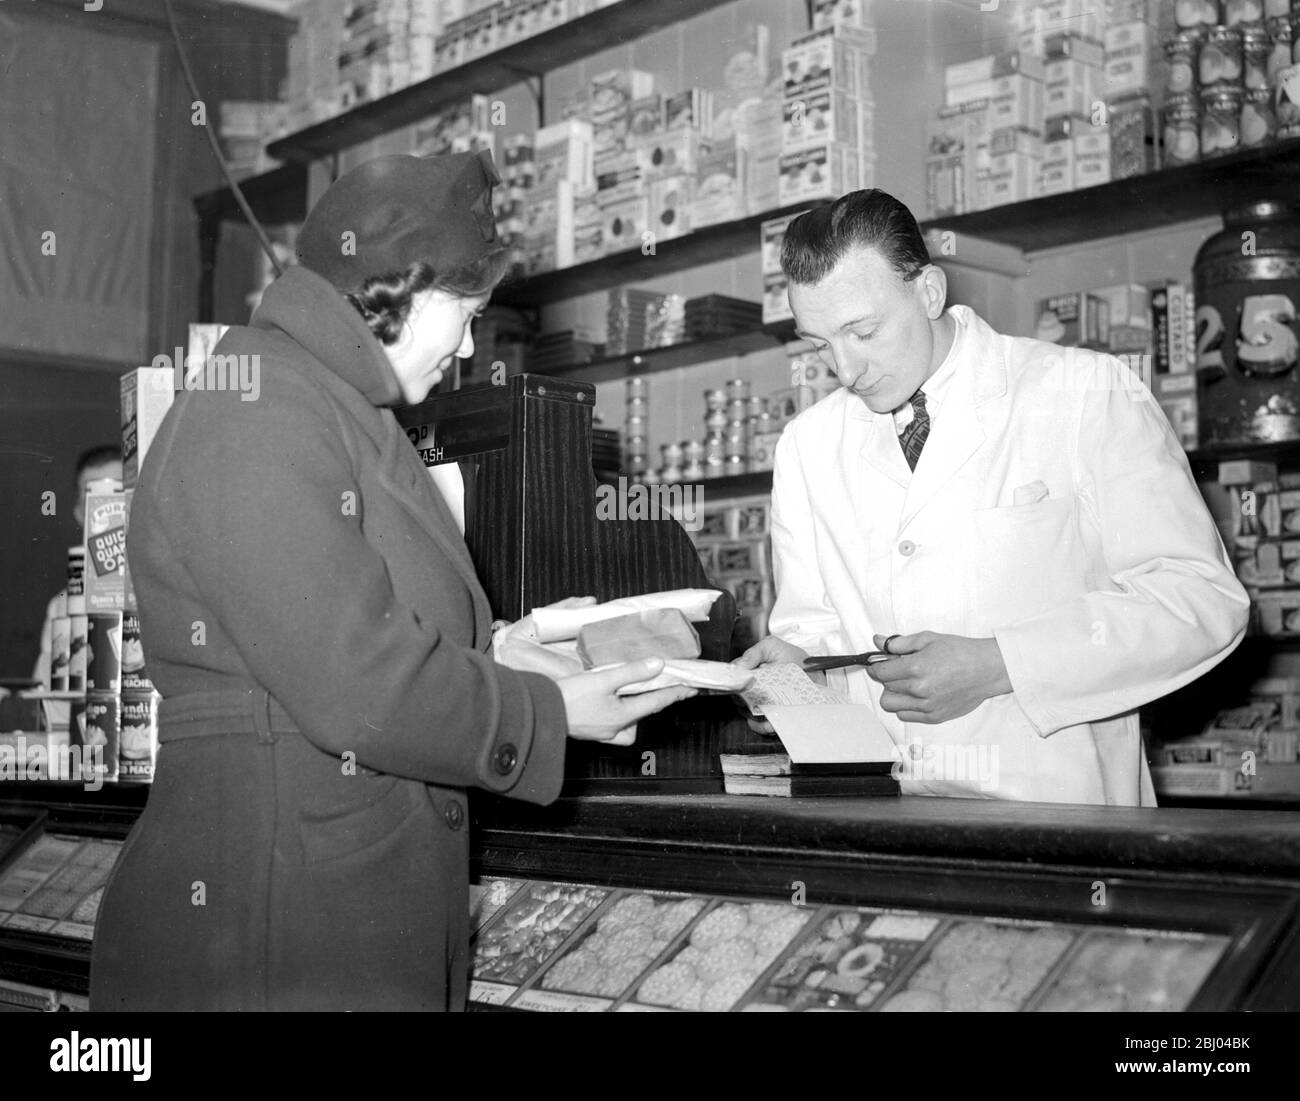 Guerre 1939-1940. - rationnement - couper les coupons pour le sucre au épicier. - 8 janvier 1940 Banque D'Images